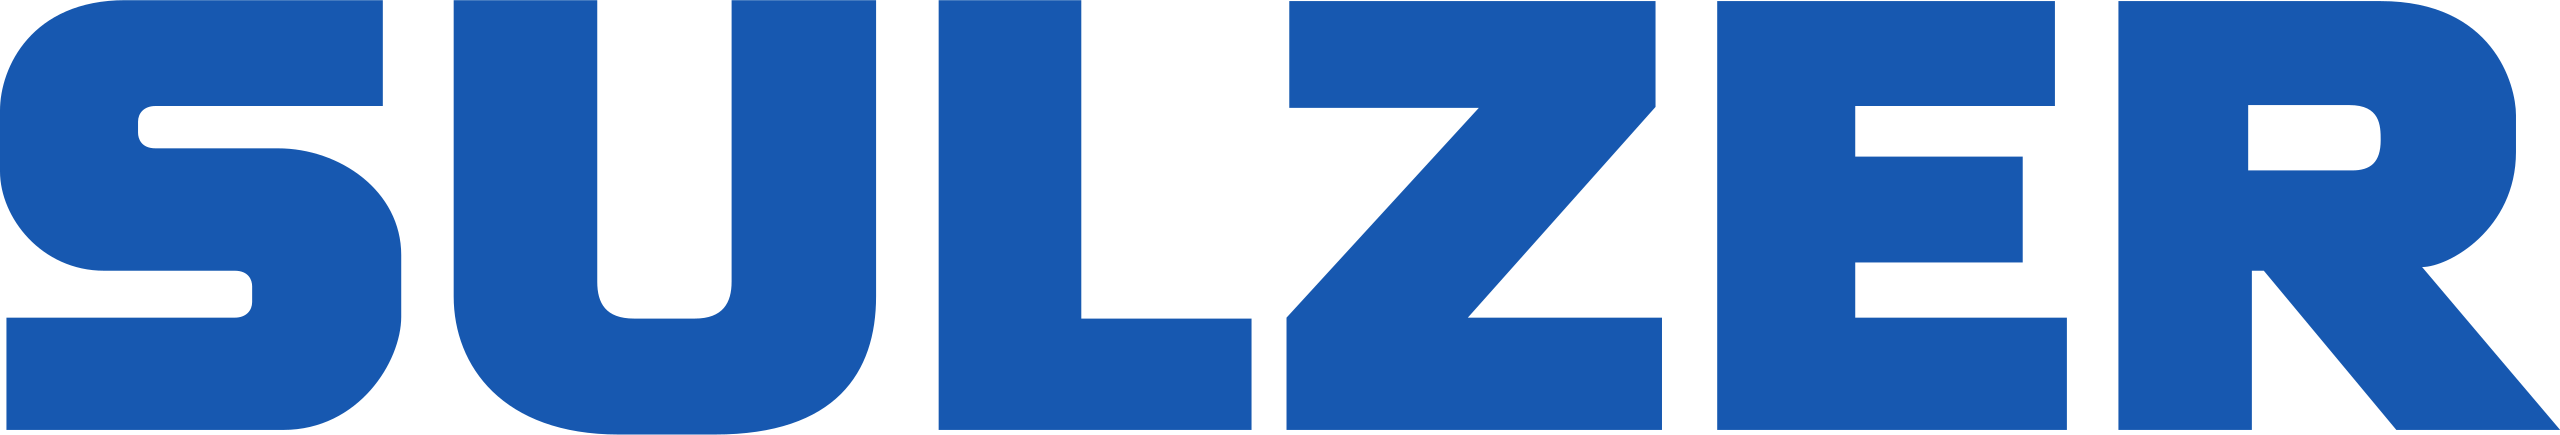 Sulzer_AG_logo